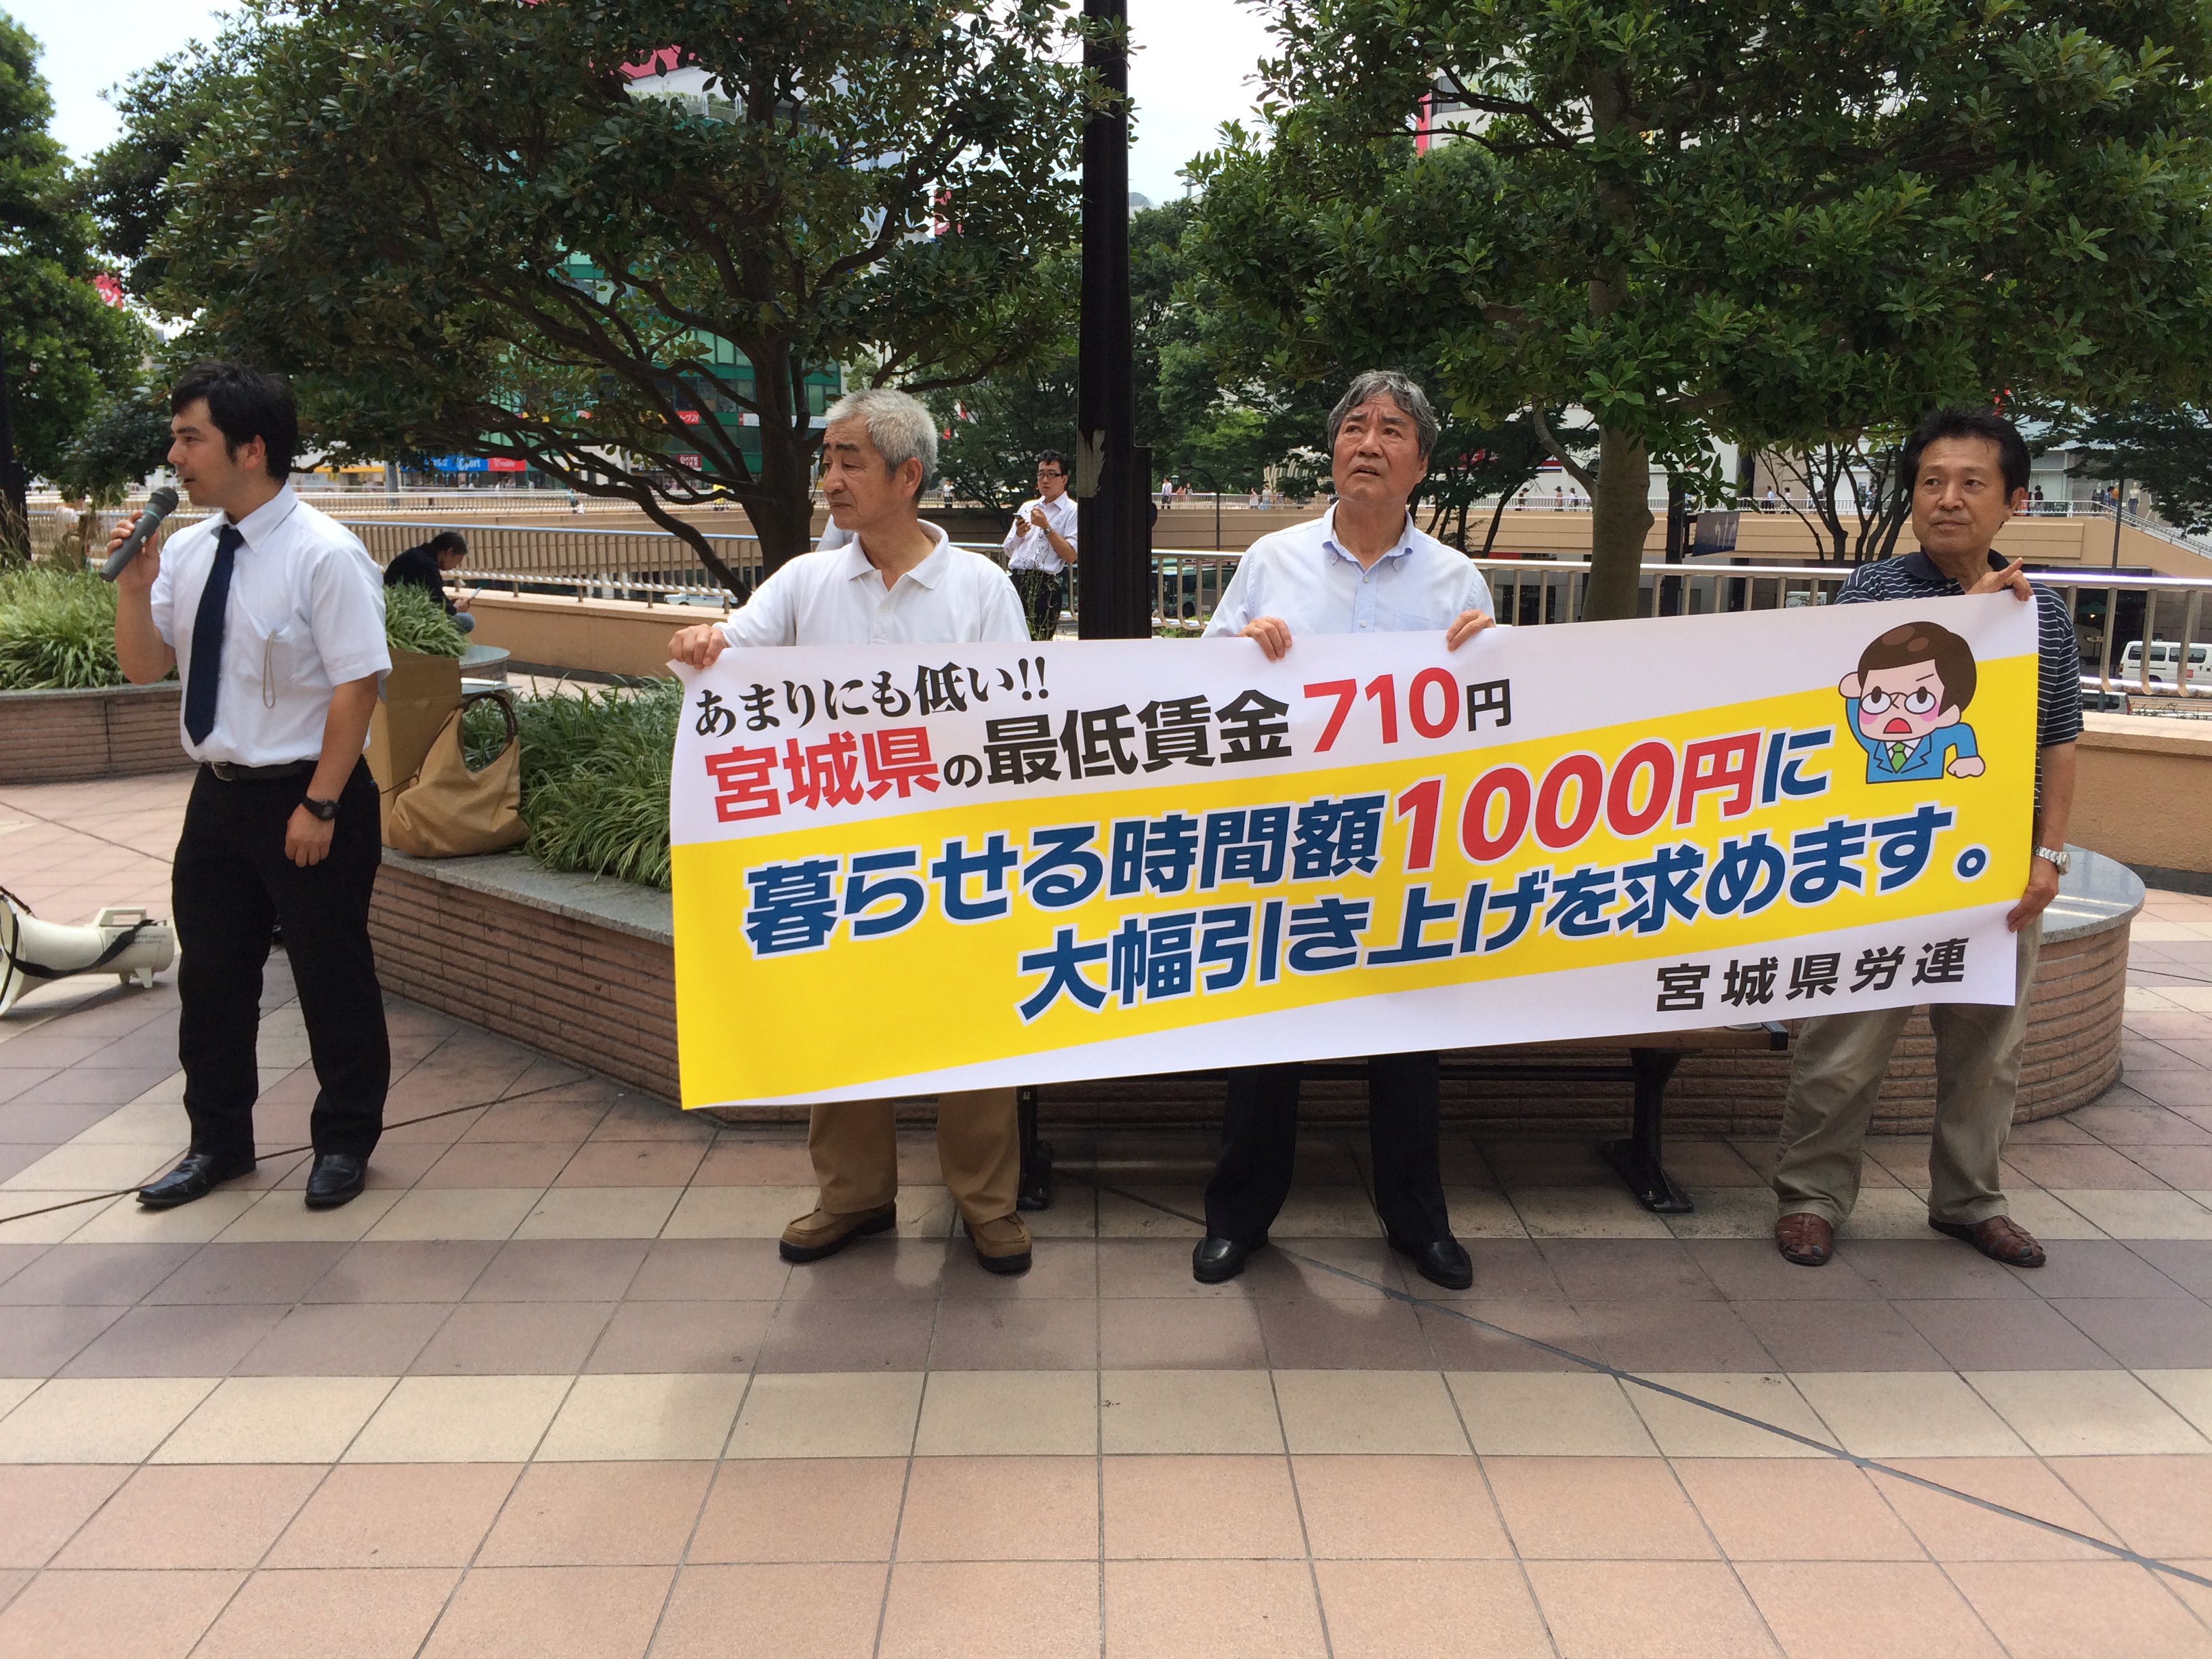 ⑤仙台駅前のペデストリアンデッキでの最賃引上げの昼宣伝署名行動。この日も暑さに負けず、23人が汗まみれで行動。署名も集まりました。